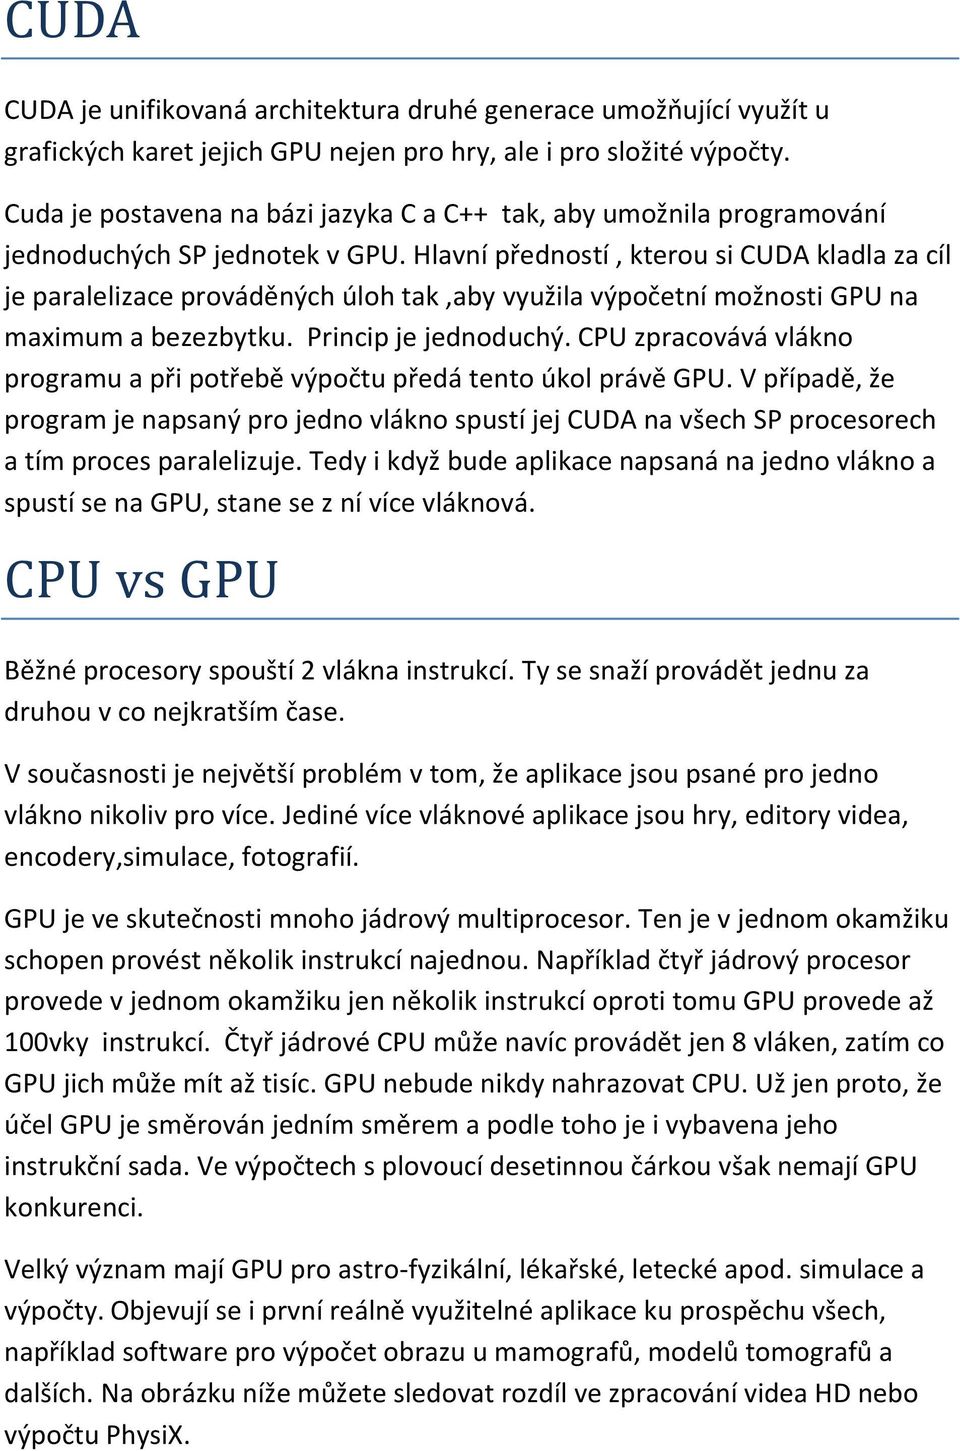 Hlavní předností, kterou si CUDA kladla za cíl je paralelizace prováděných úloh tak,aby využila výpočetní možnosti GPU na maximum a bezezbytku. Princip je jednoduchý.